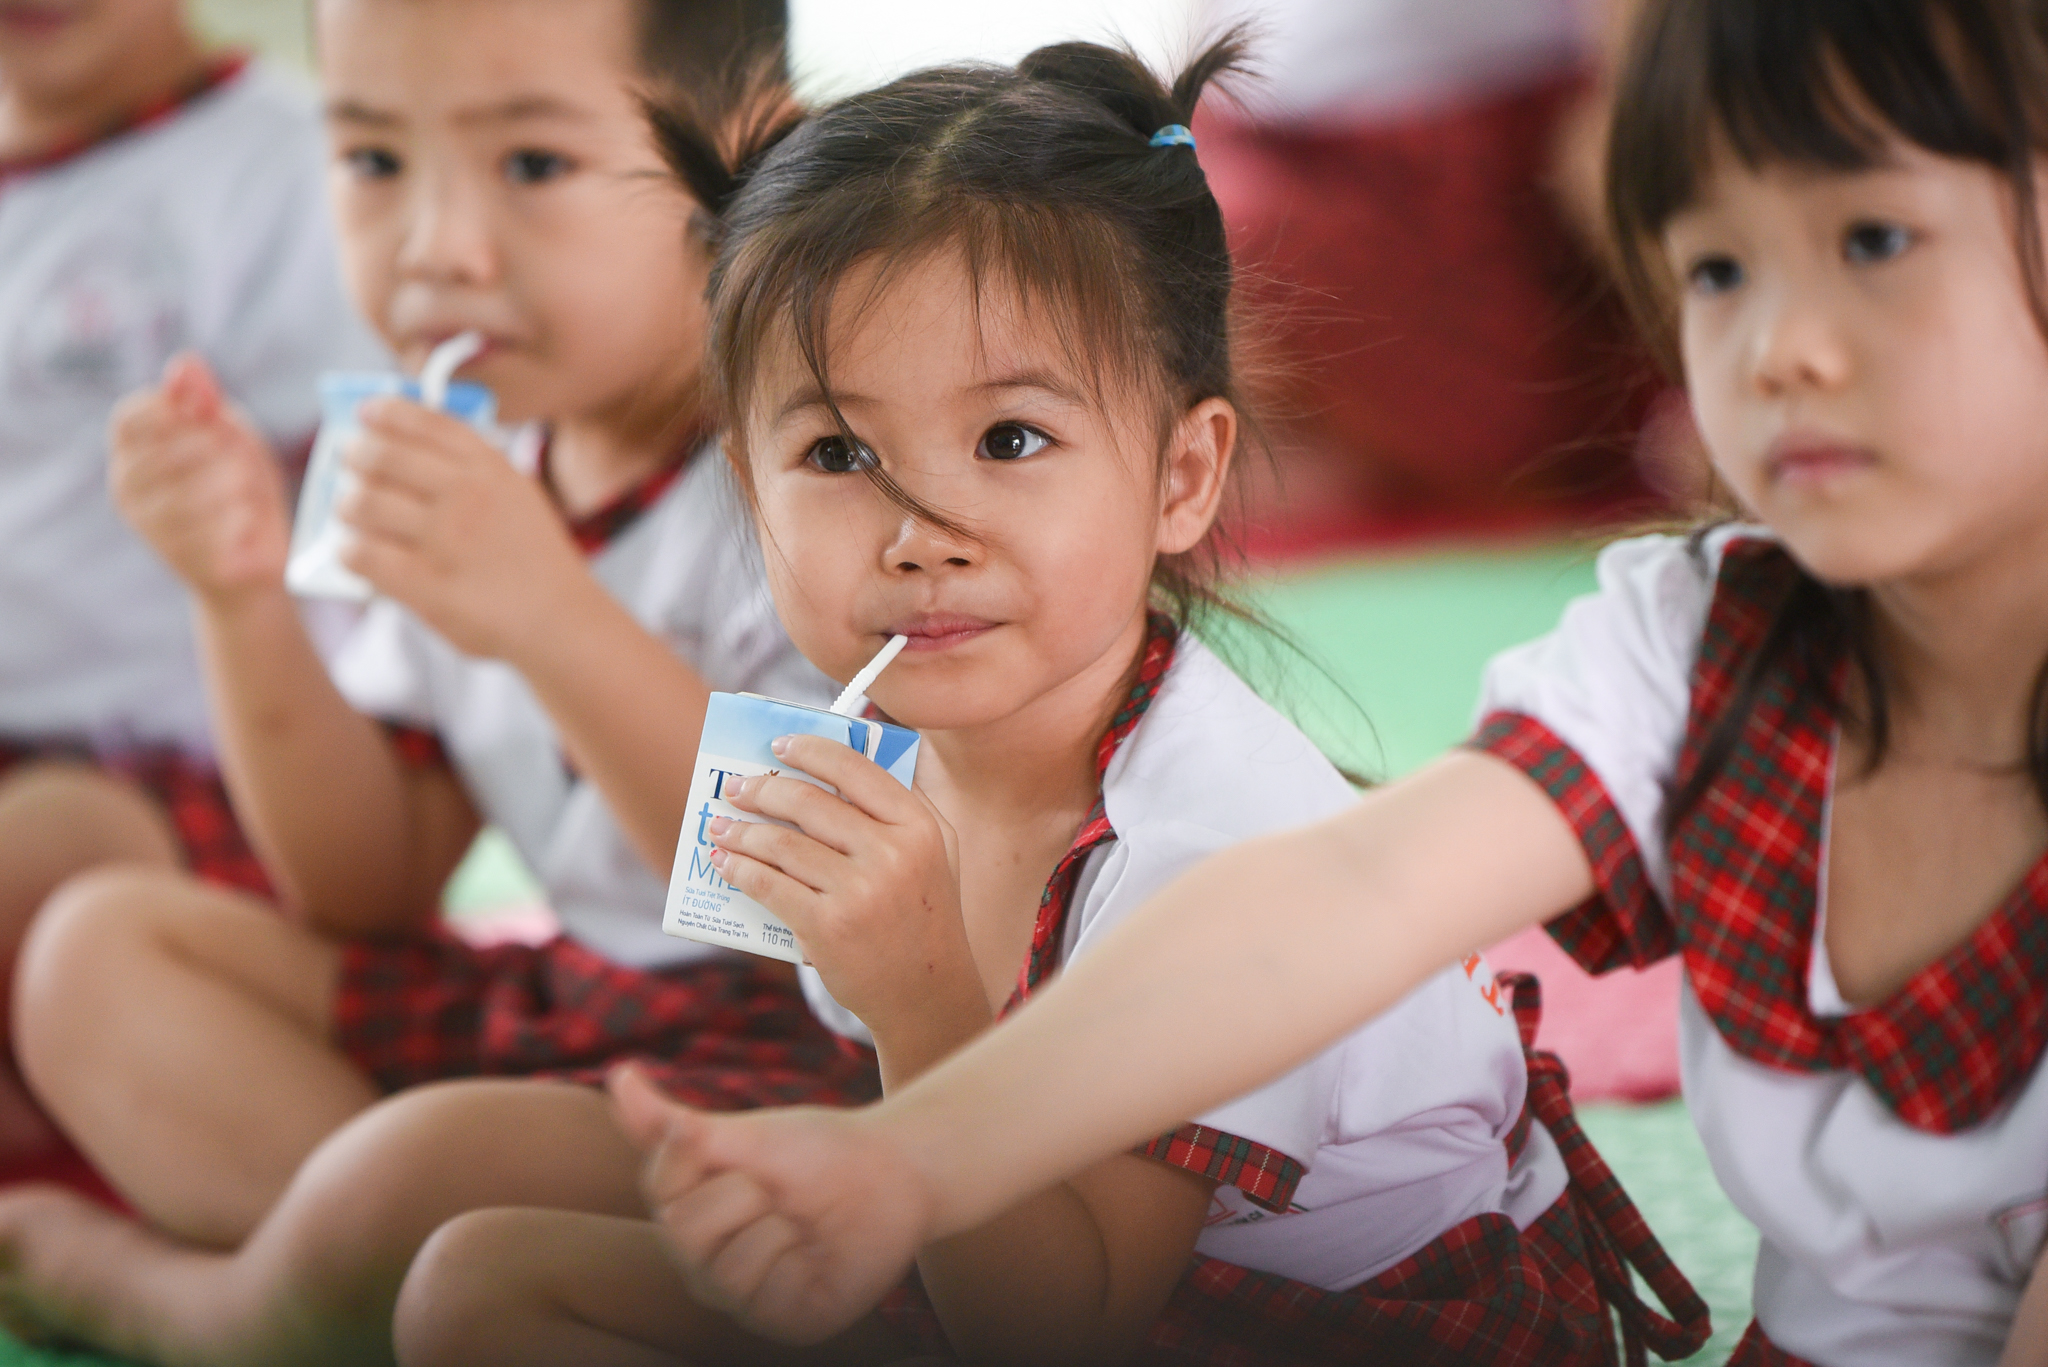 TH đồng hành cùng các chương trình sữa học đường, sức khỏe học đường nhằm nâng cao tầm vóc, thể lực cho trẻ em Việt Nam.